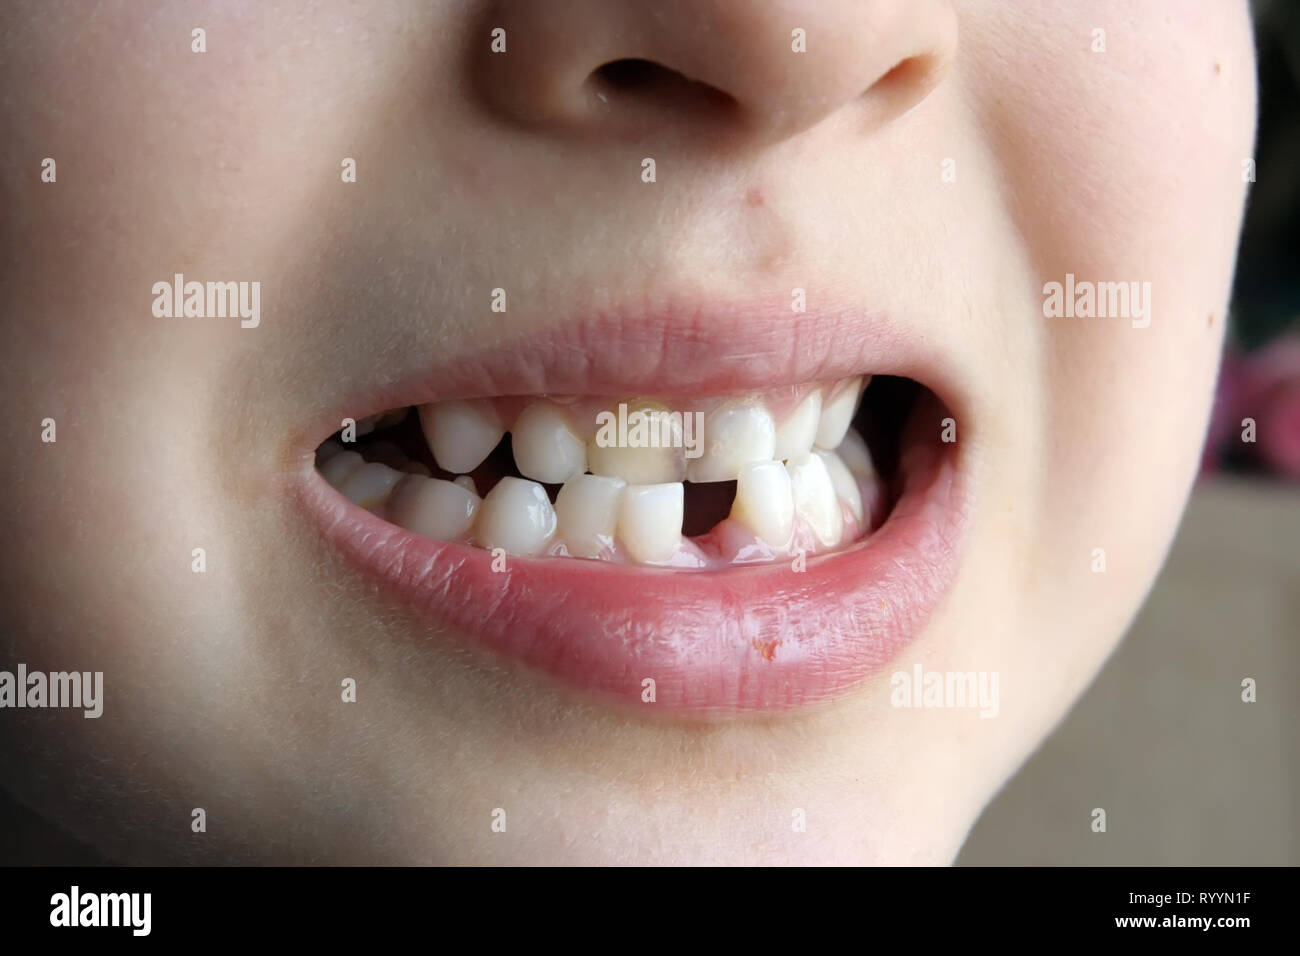 La dent manquante. Une dent manquante pour enfants. Écart entre les dents des enfants. Banque D'Images